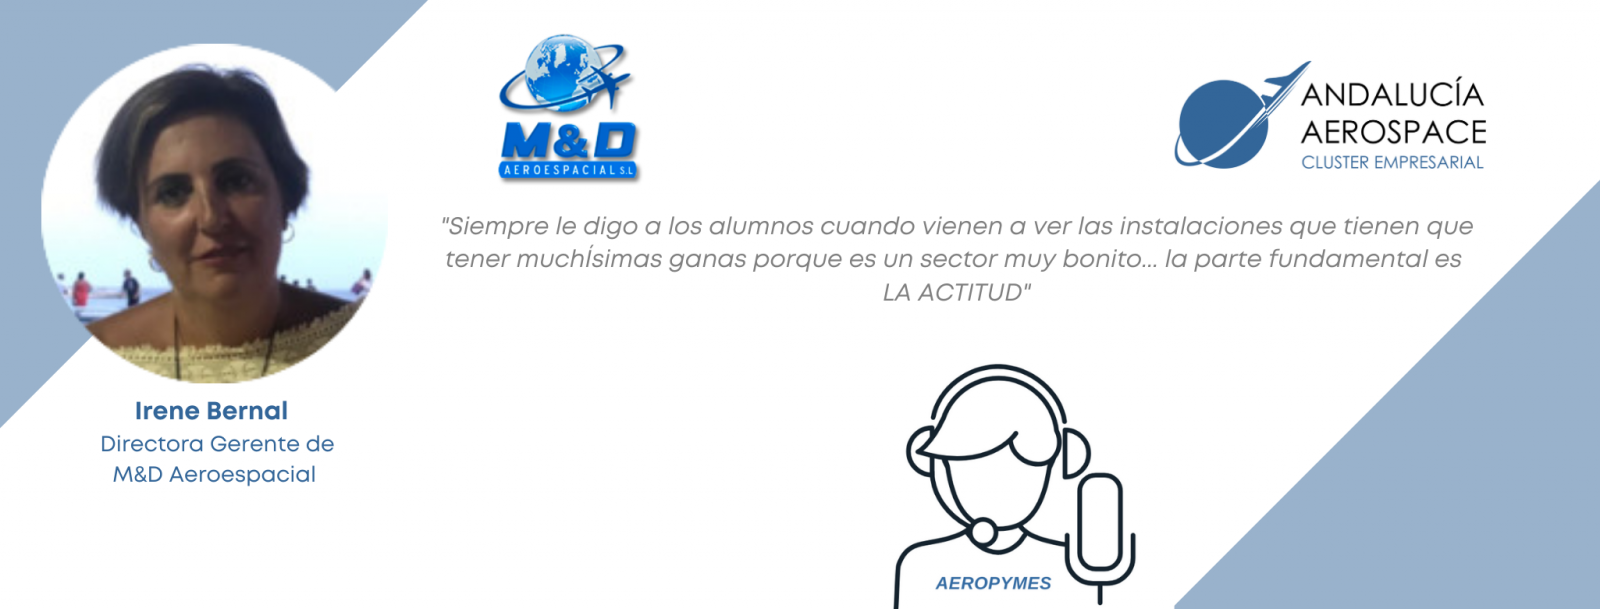 M&D Aeroespacial - Andalucía Aerospace